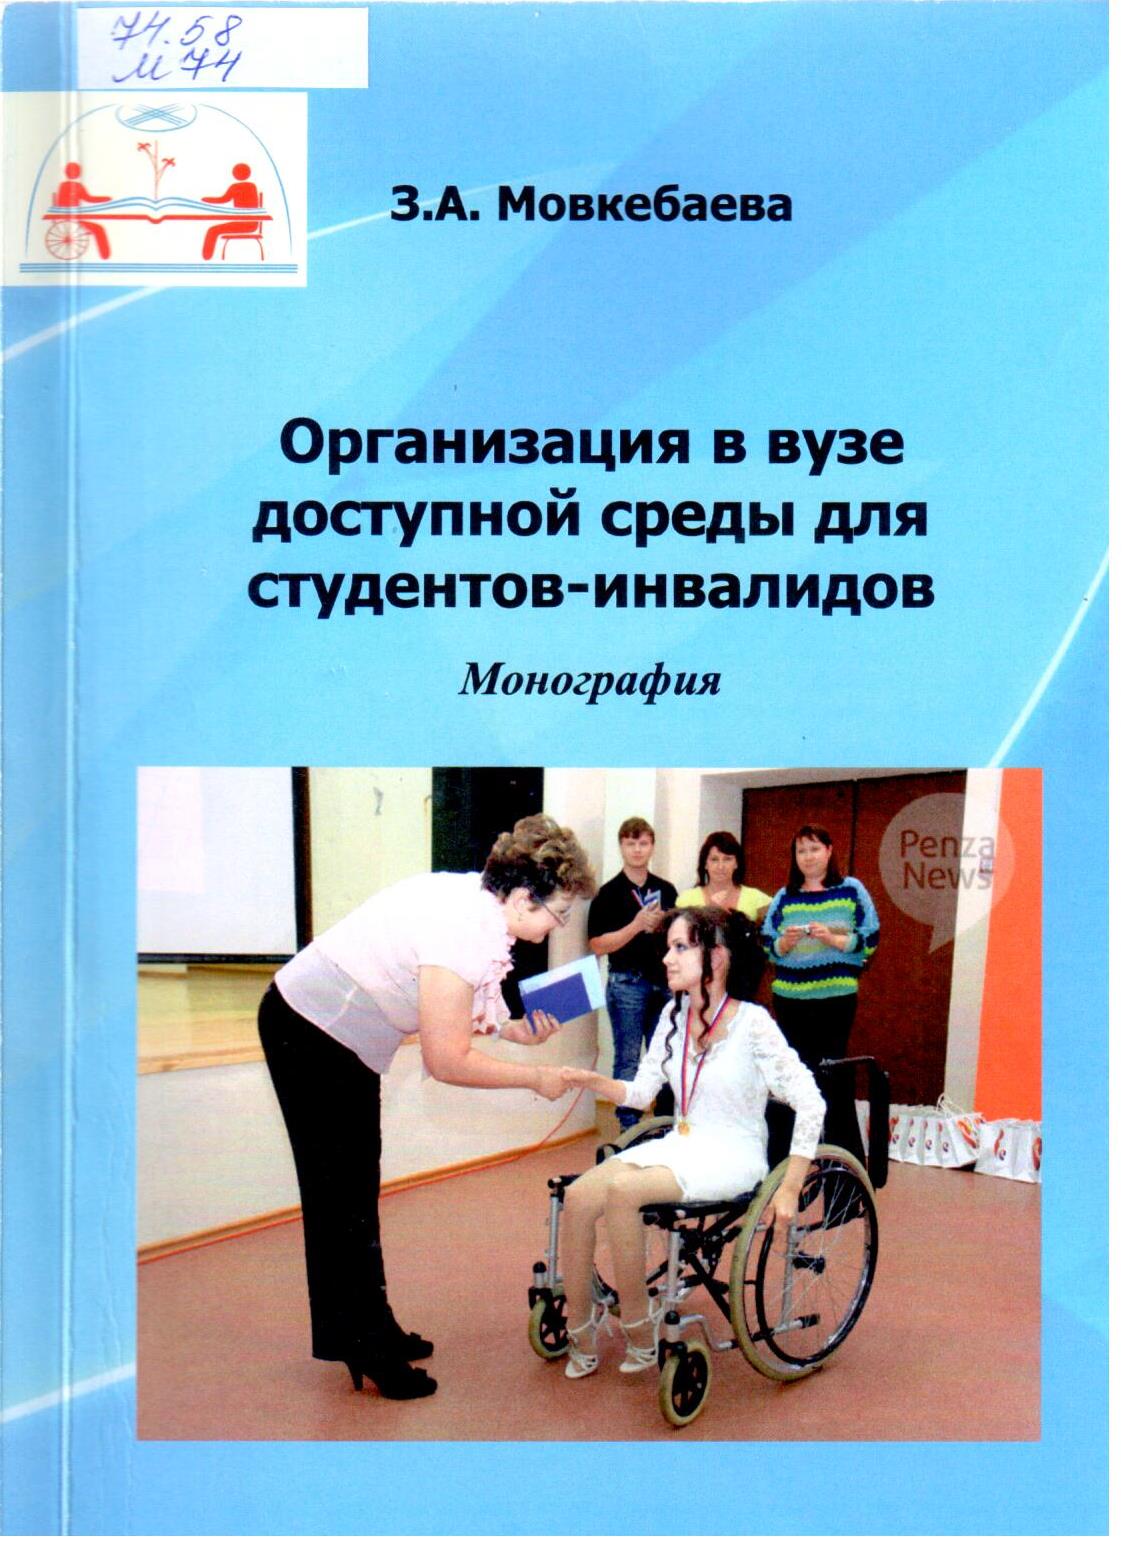 Книги про инвалидов. Мовкебаева з.а. Студенты инвалиды в вузе. .А.Мовкебаева и инновационные технолог.